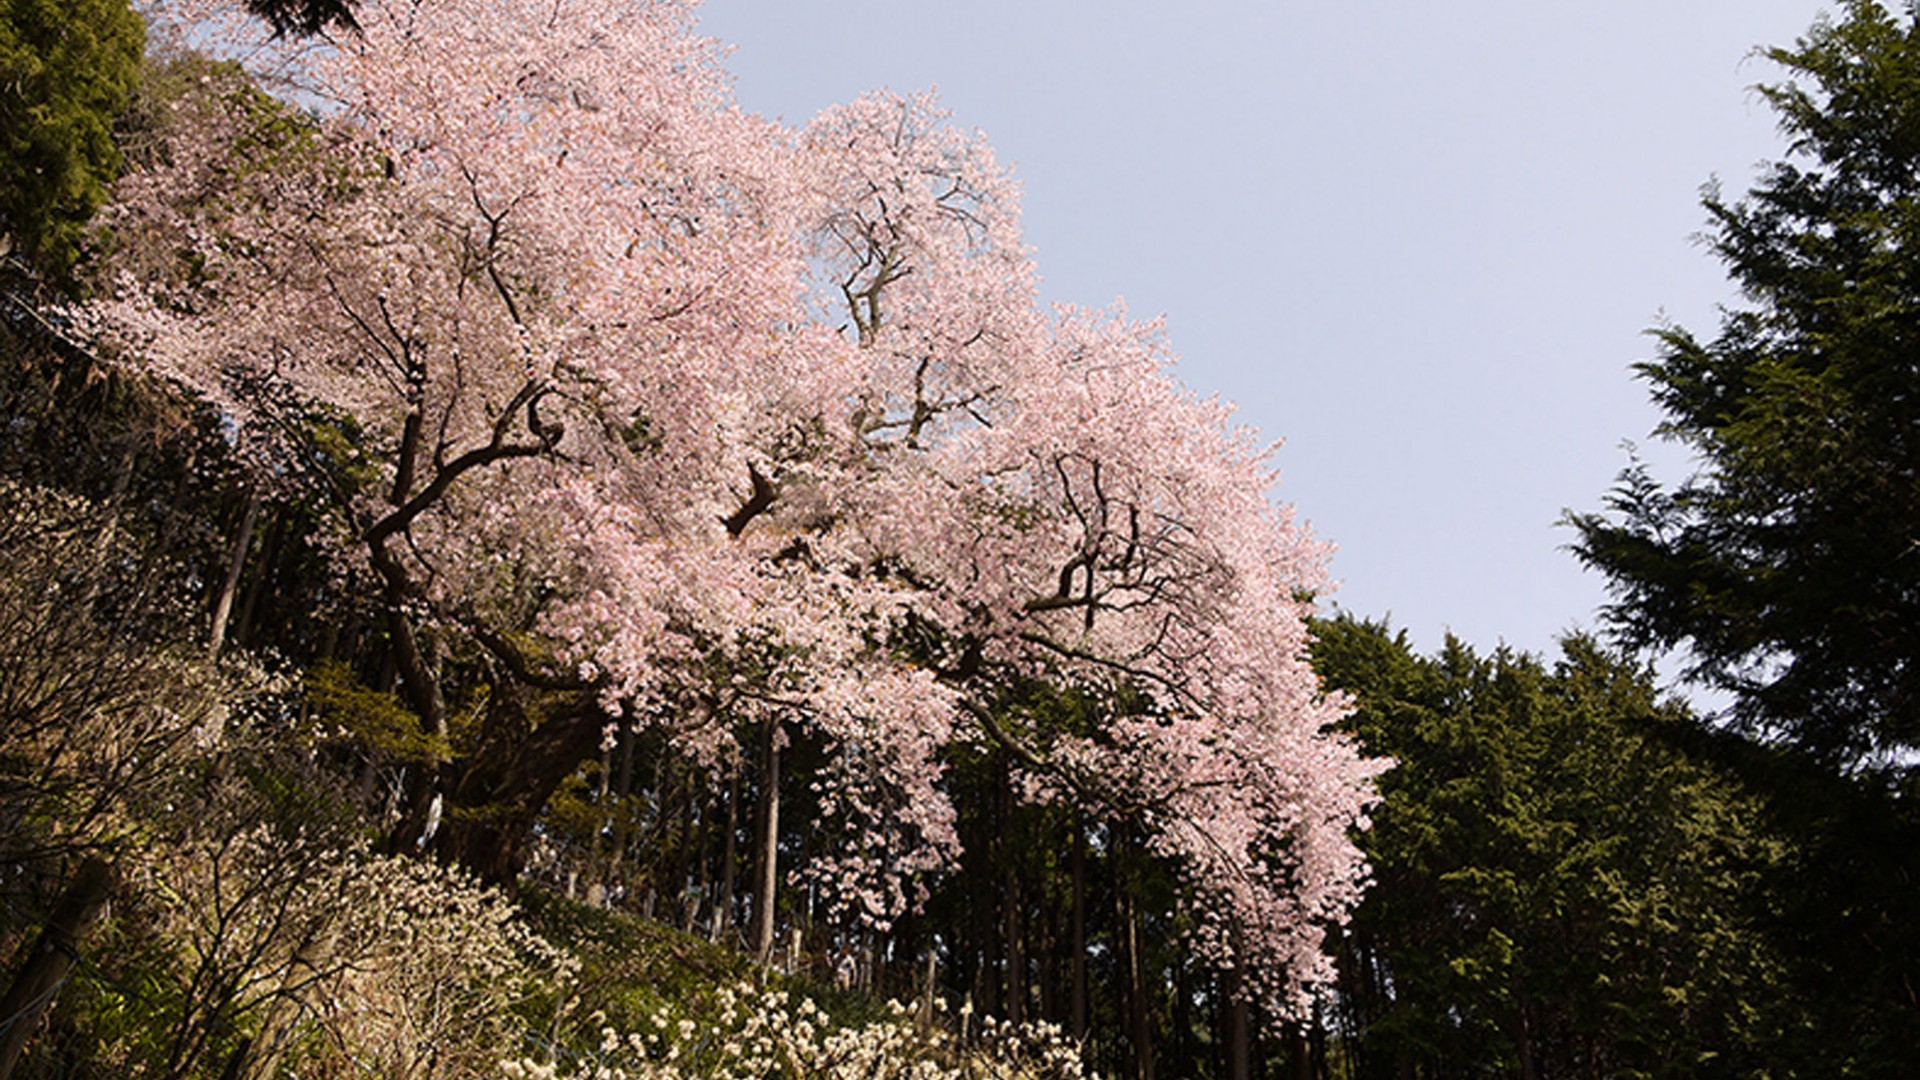 Oyama Sakura(cherry blossoms)